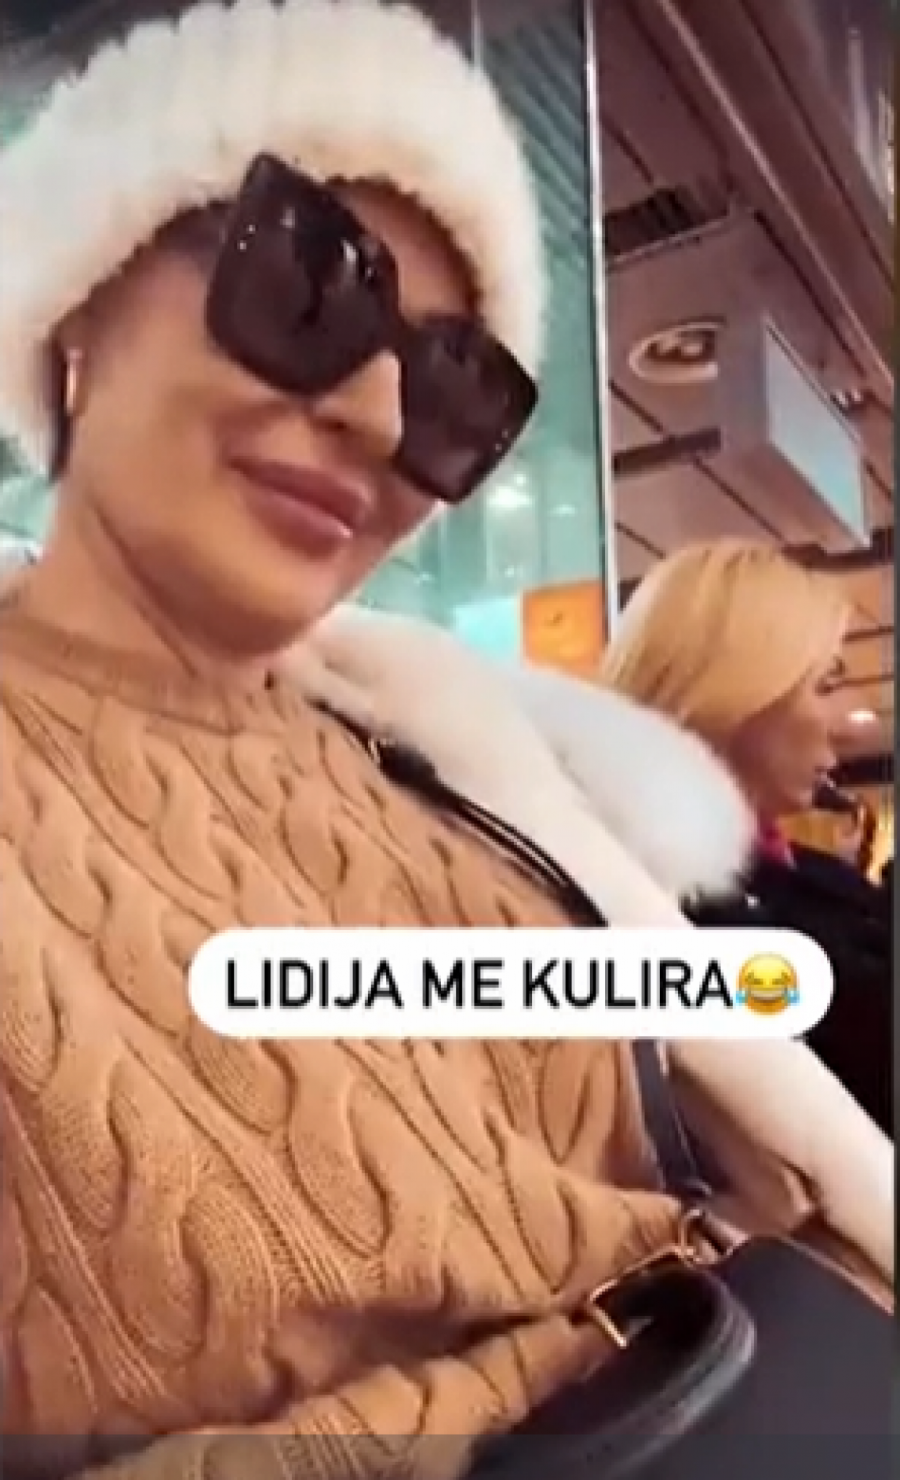 U RUCI DRŽI 2.230 EVRA Hit snimak Cece Ražnatović, pevačica snimala sestru Lidiju na aerodromu (FOTO)